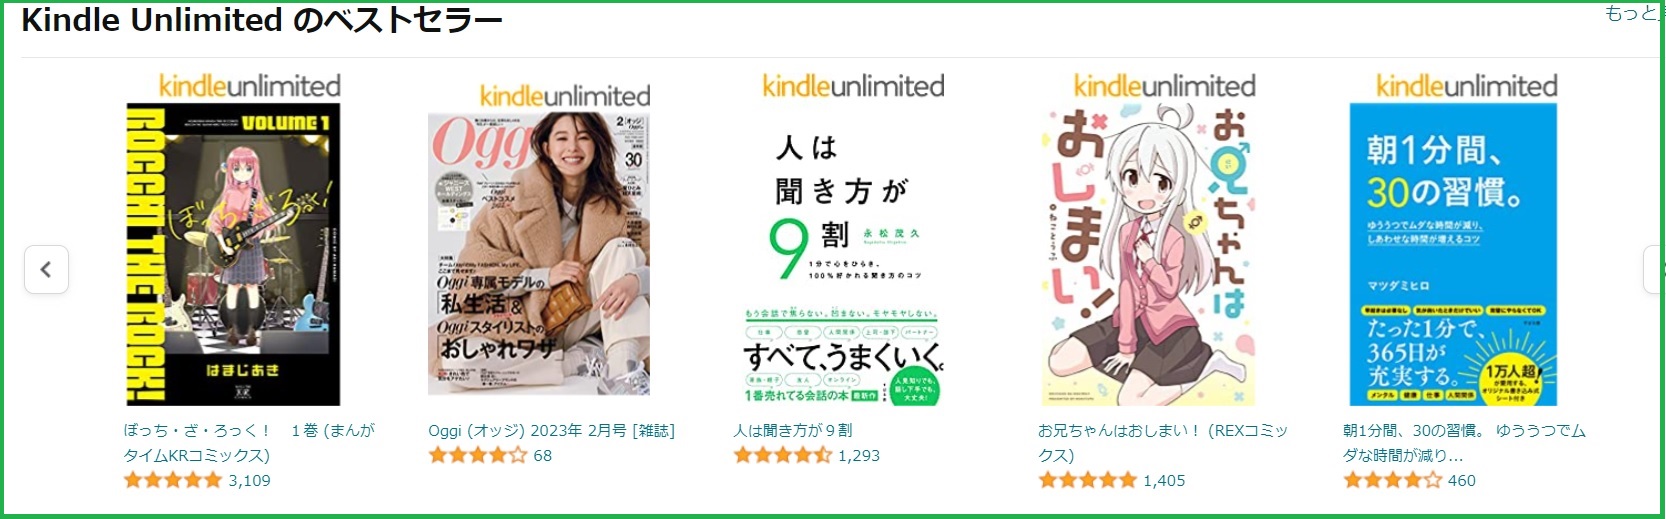 Kindle Unlimitedのベストセラー一覧を表示する画像